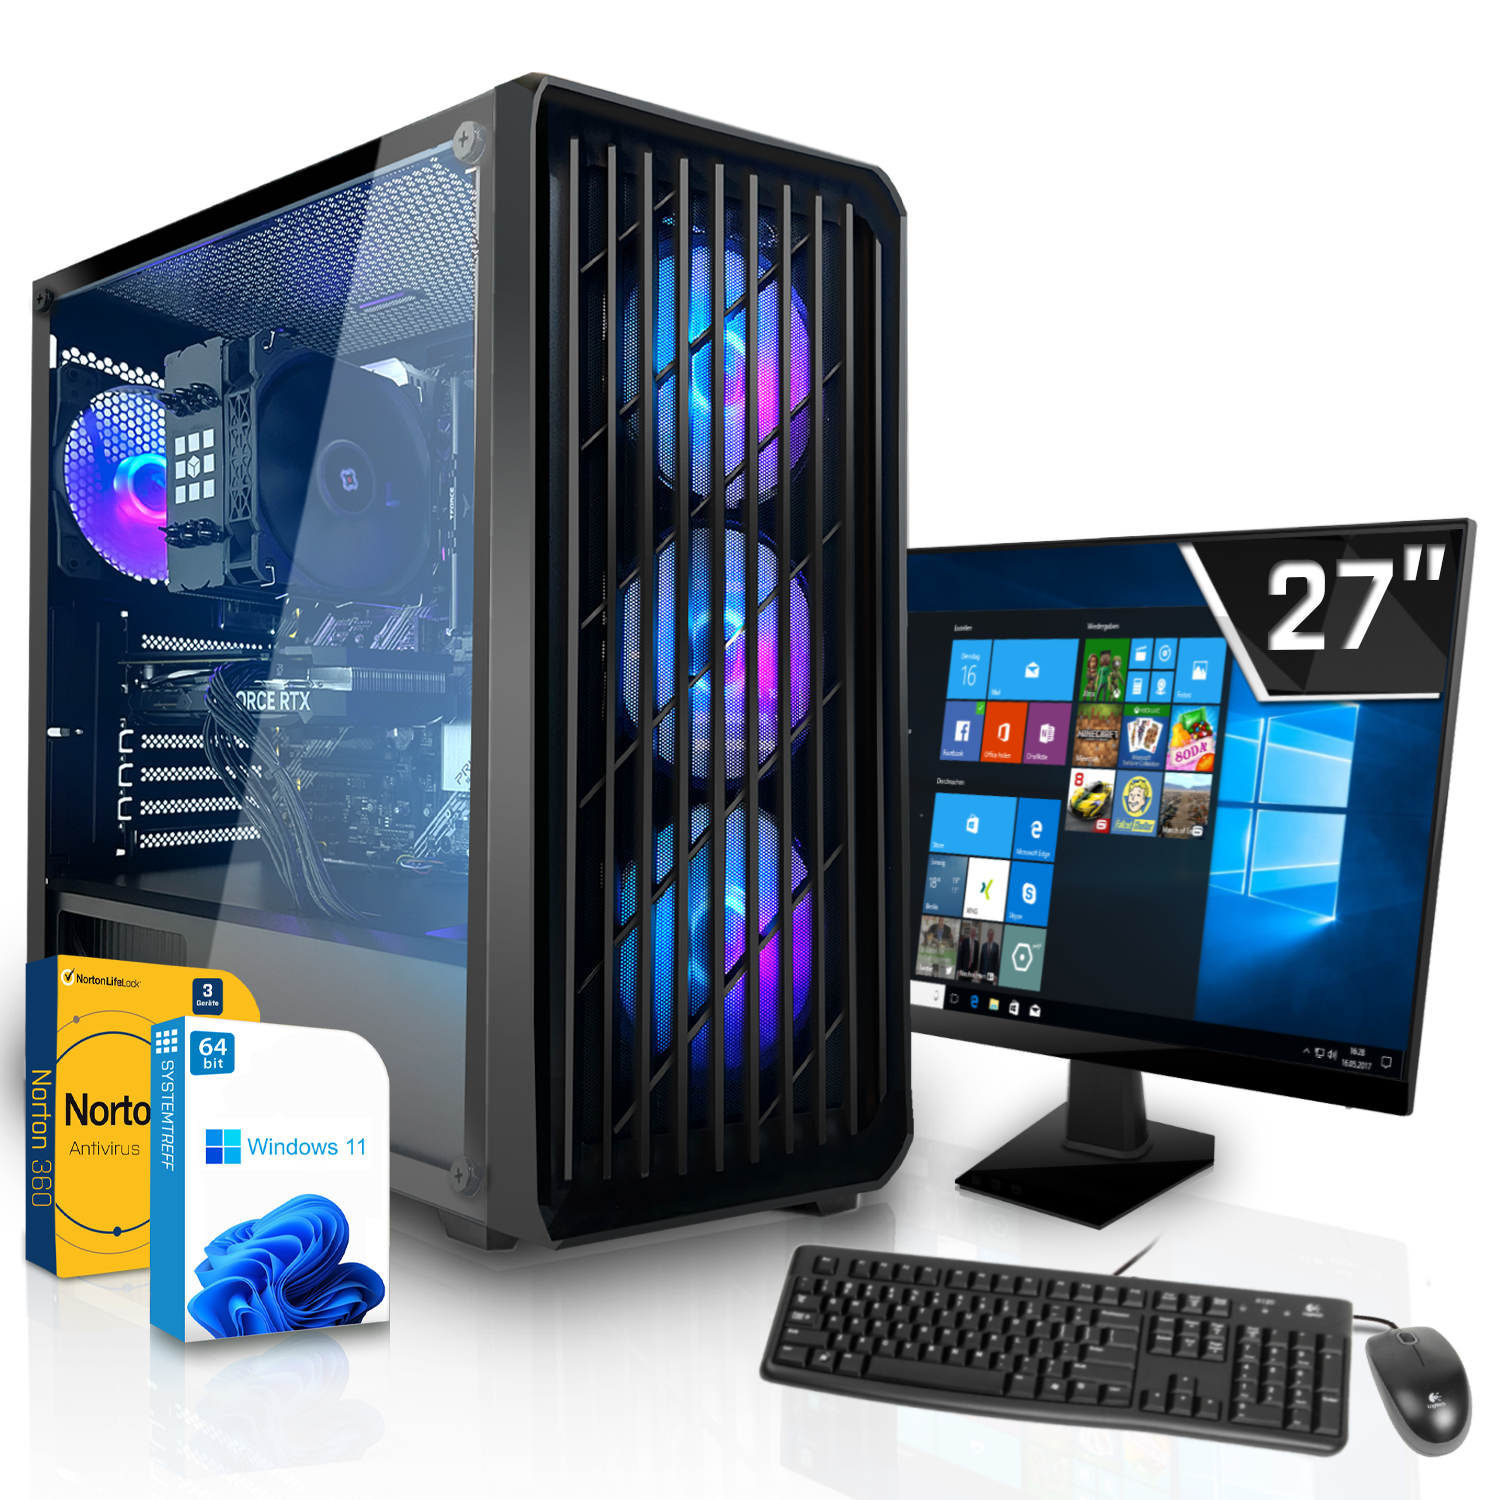 SYSTEMTREFF Gaming Komplett Intel Core PC i7-12700K RAM, GB i7-12700K, mSSD, Prozessor, 1000 Nvidia GB 12 GDDR6, mit 16 GeForce 12GB RTX Komplett GB 3060